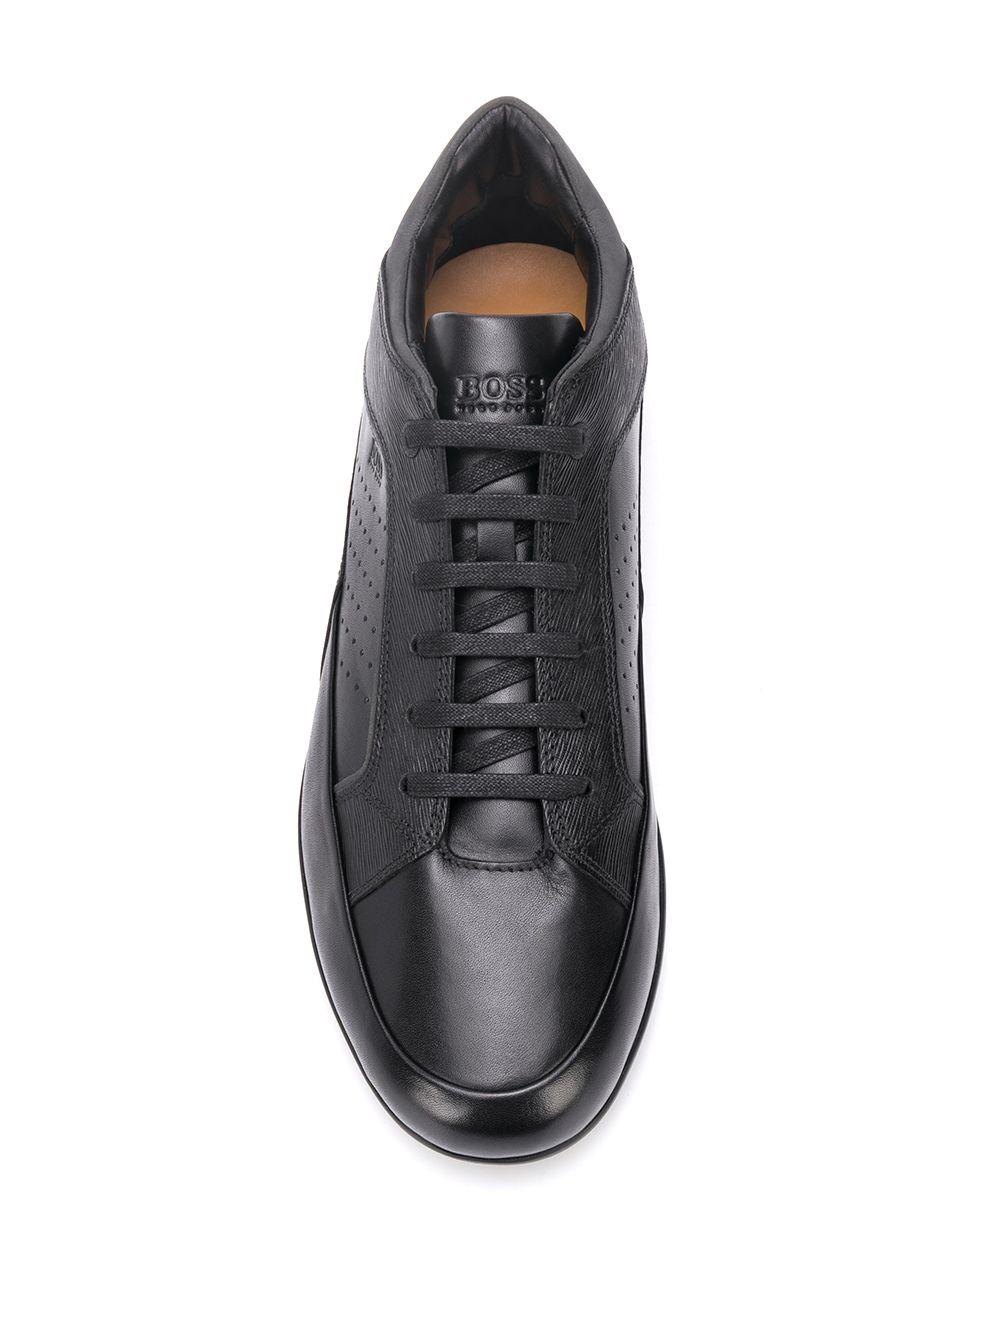 BOSS by HUGO BOSS Avenue Low-top Sneakers for Men | Lyst